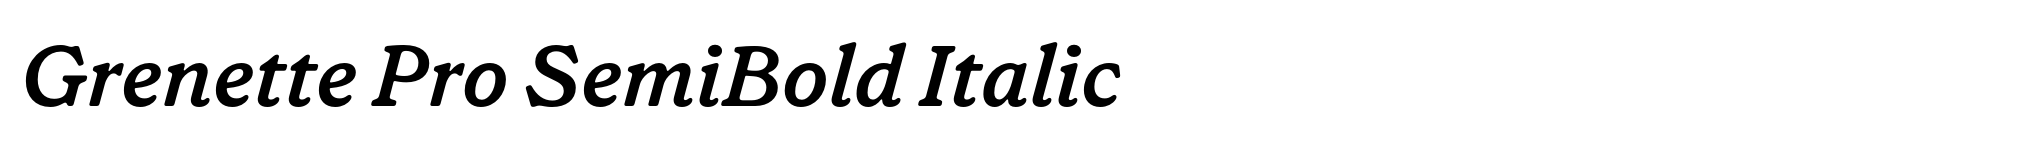 Grenette Pro SemiBold Italic image